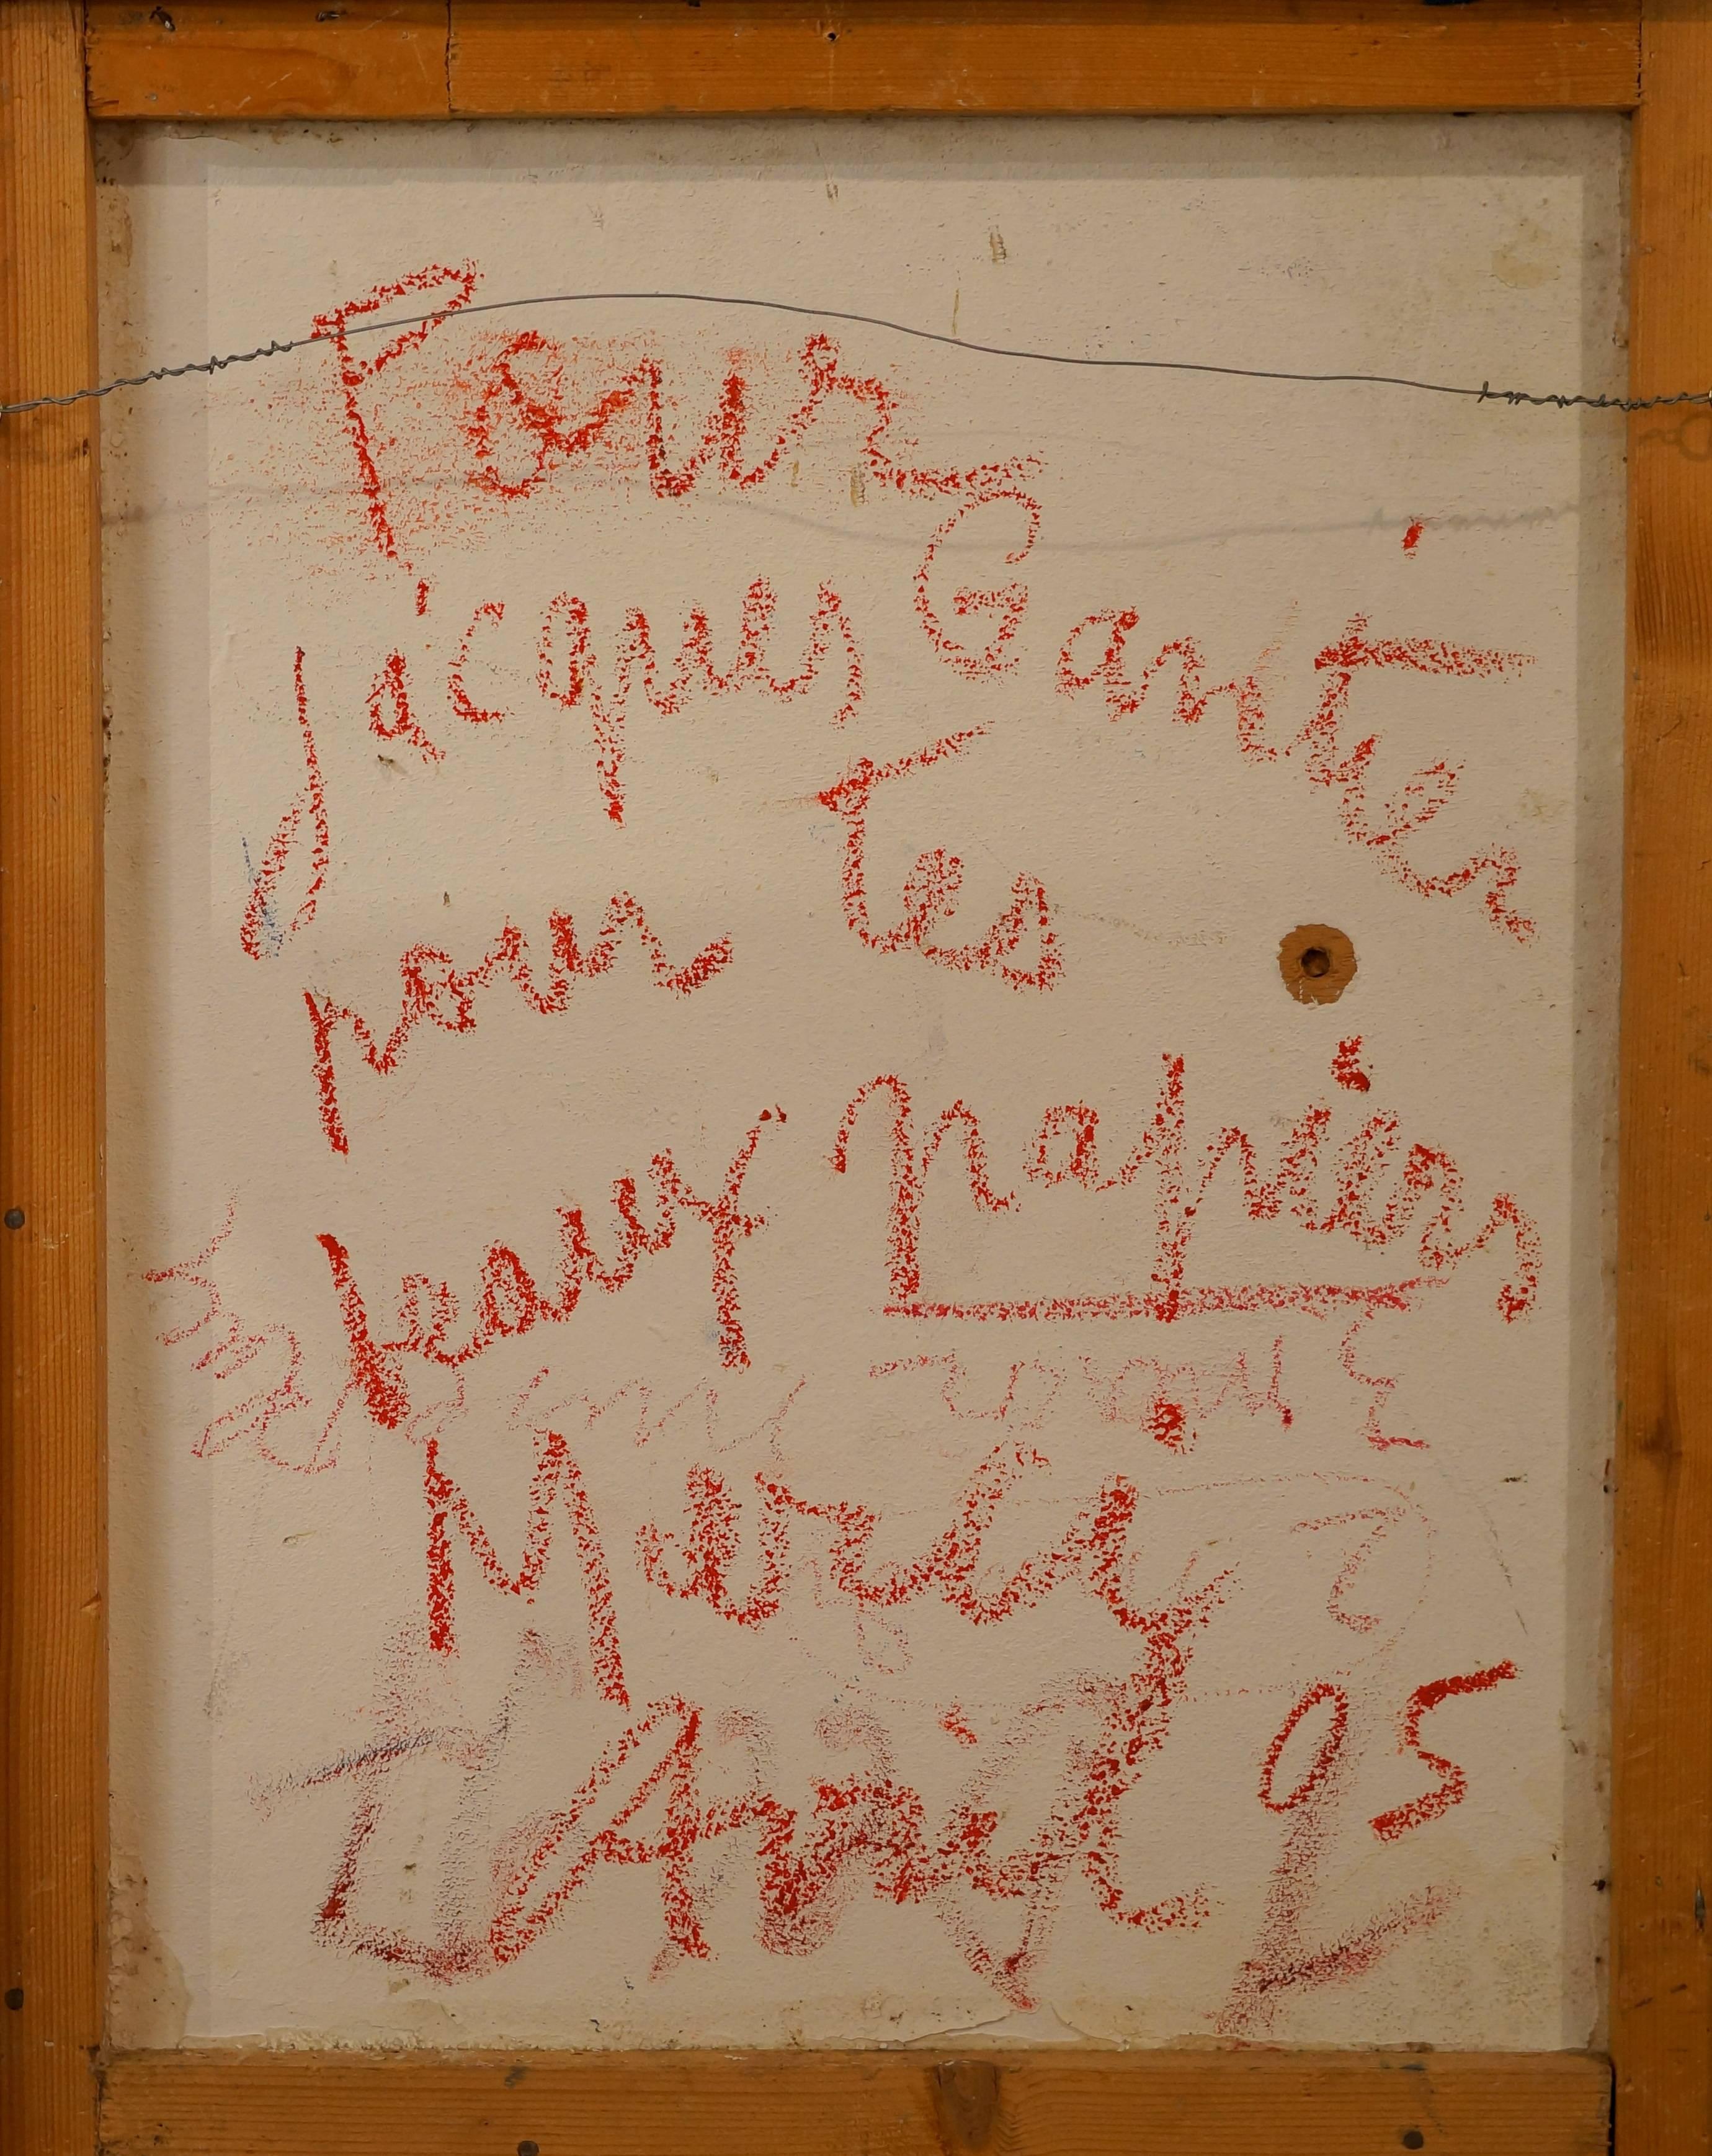 La Mer à Cassis (Cote d'azur, France), 2005 - mixed media, 67x55 cm, framed For Sale 1